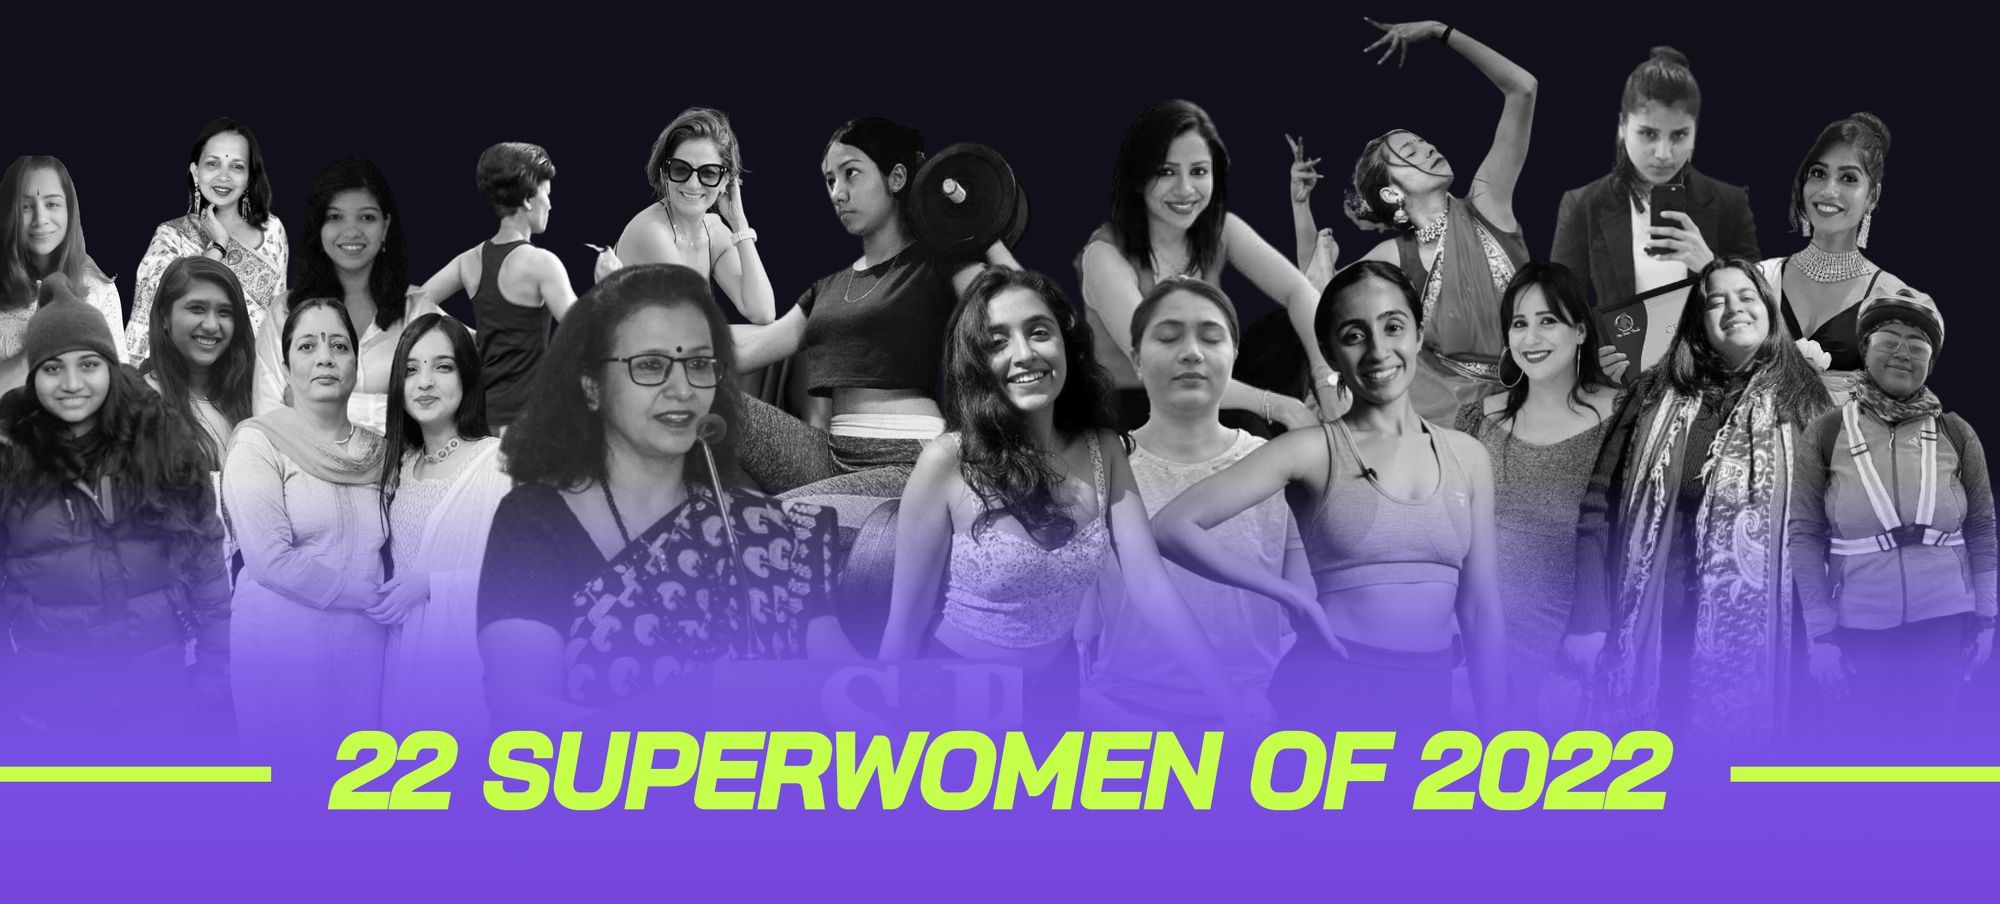 22 SuperWomen of 2022